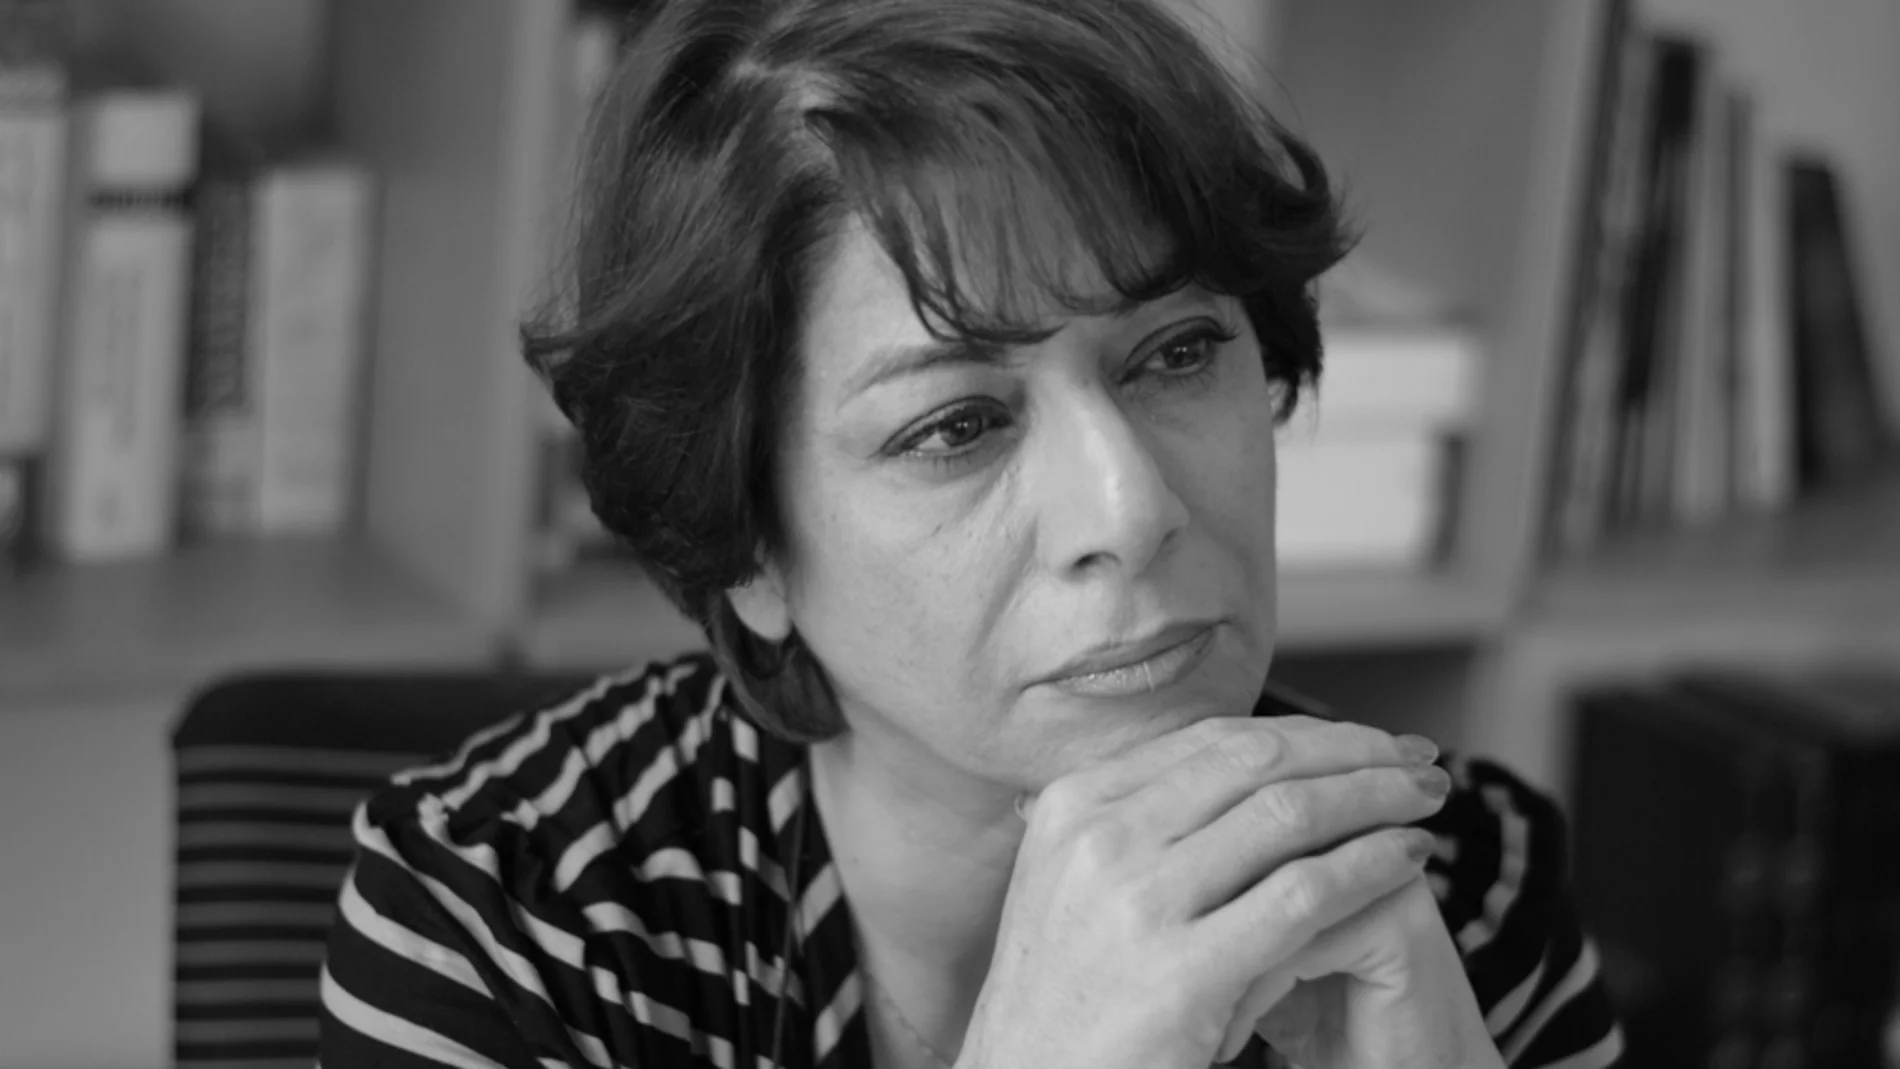 La escritora Parinoush Saniee tenía 30 años cuando comenzaron los disturbios que provocaron la Revolución Islámica en Irán